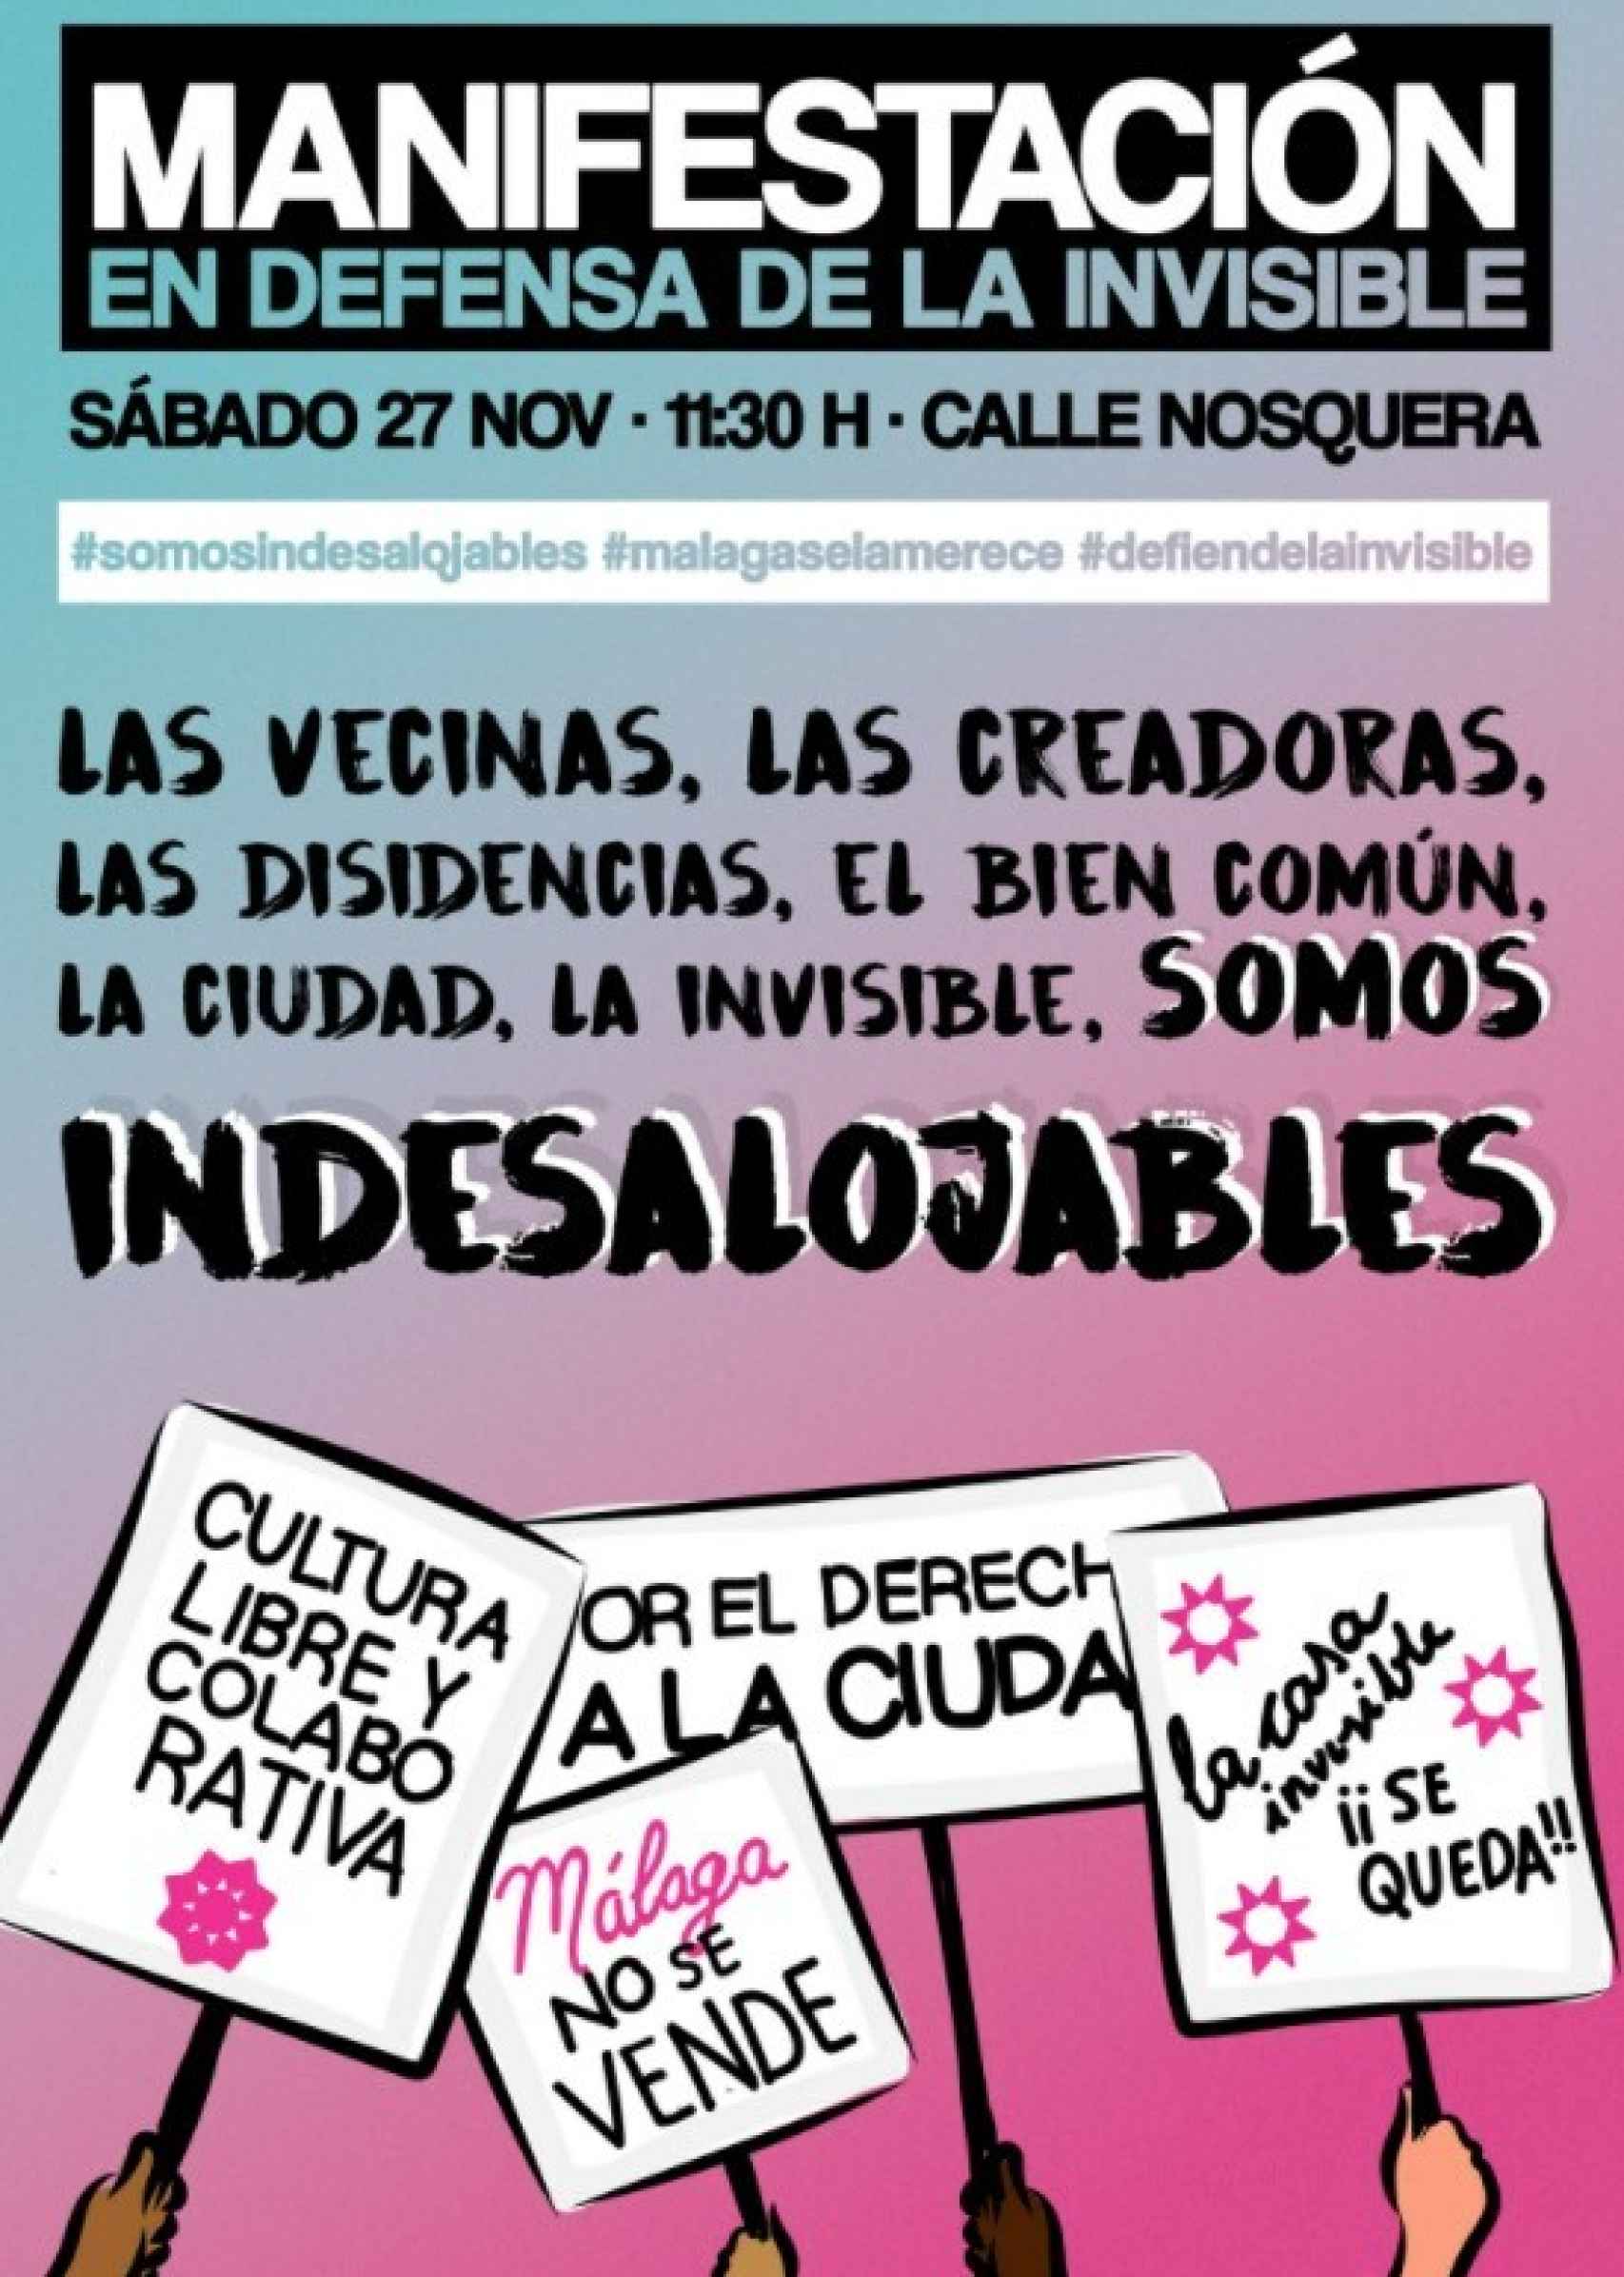 Cartel anunciando la manifestación prevista por La Invisible.